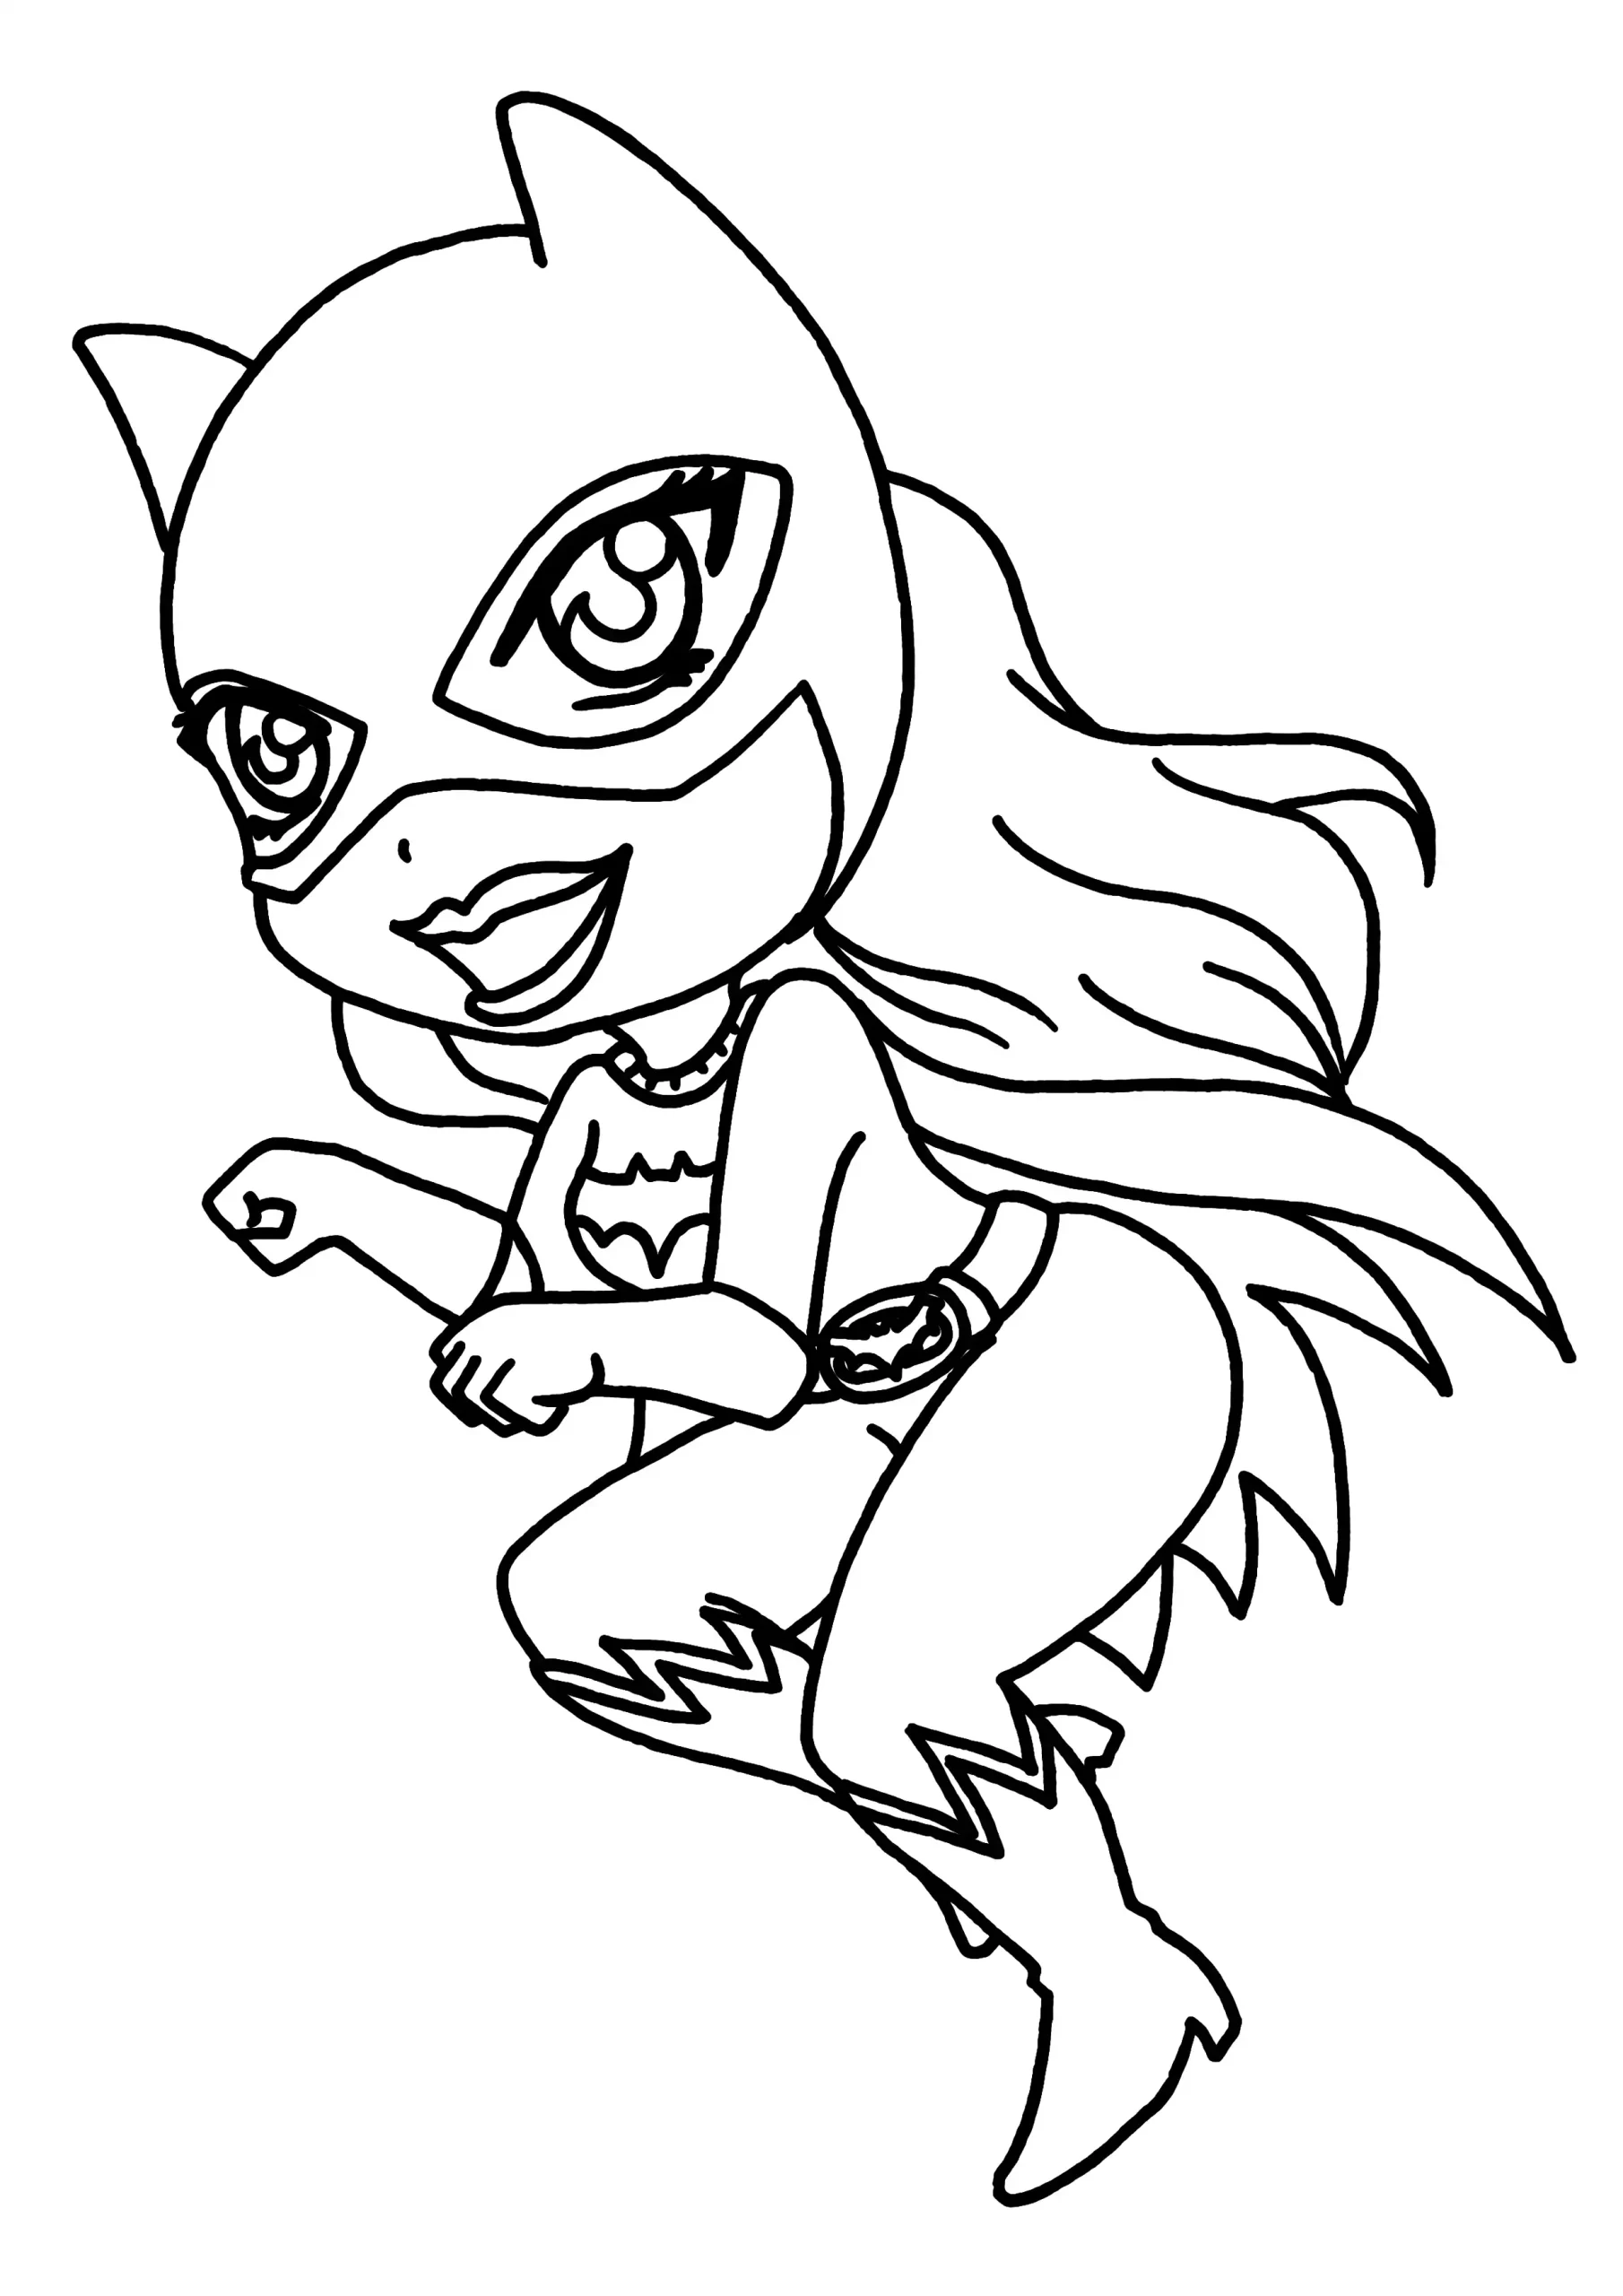 Página para colorear de Catwoman para imprimir gratis